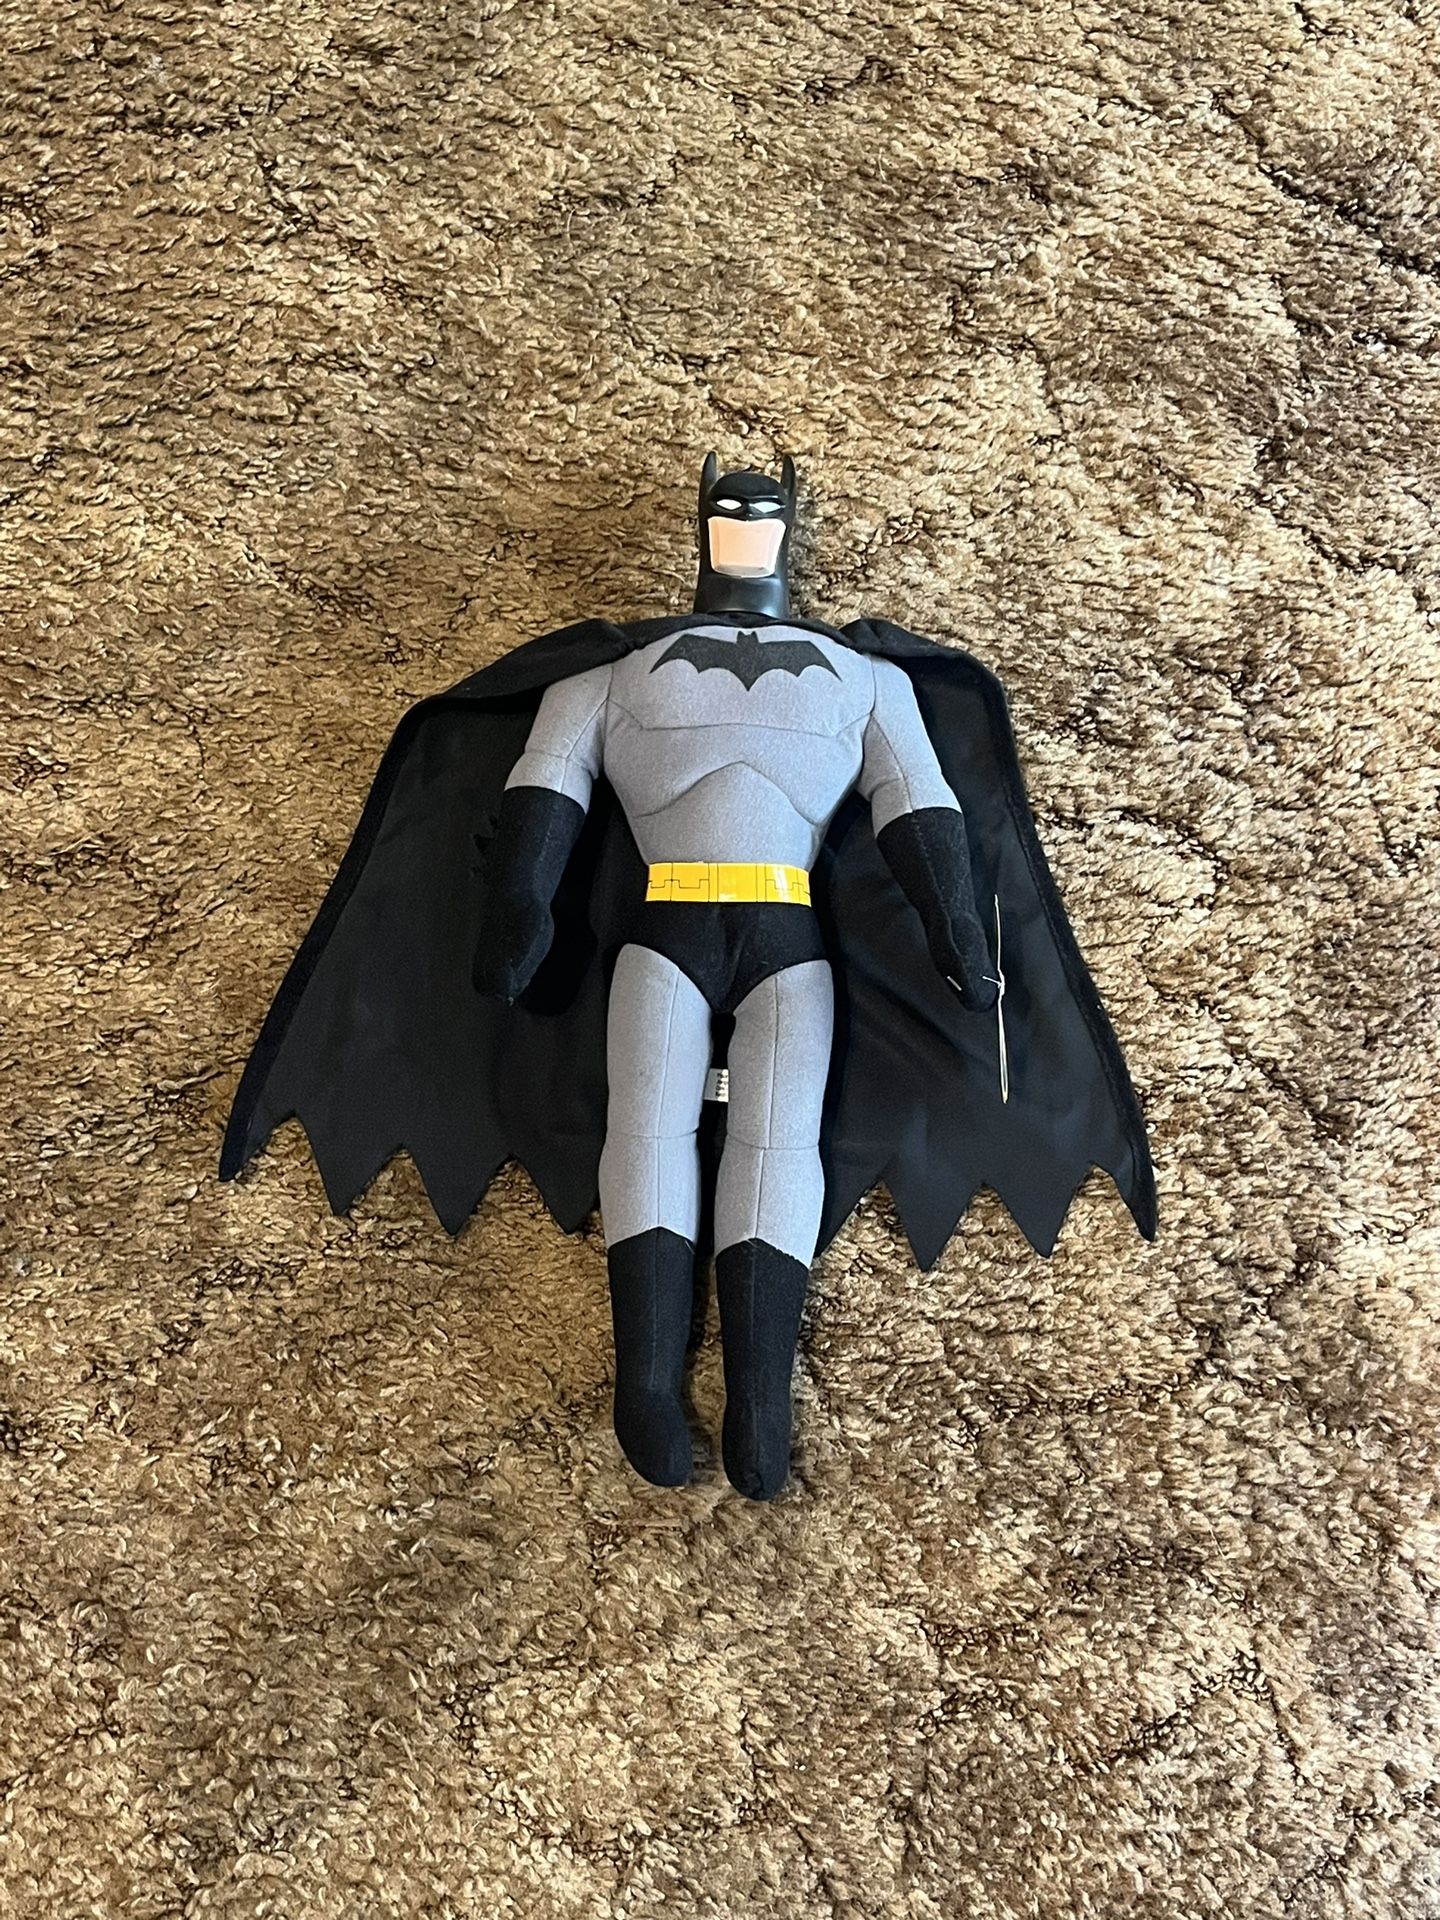 Batman 17 Inch Plush Doll Toy